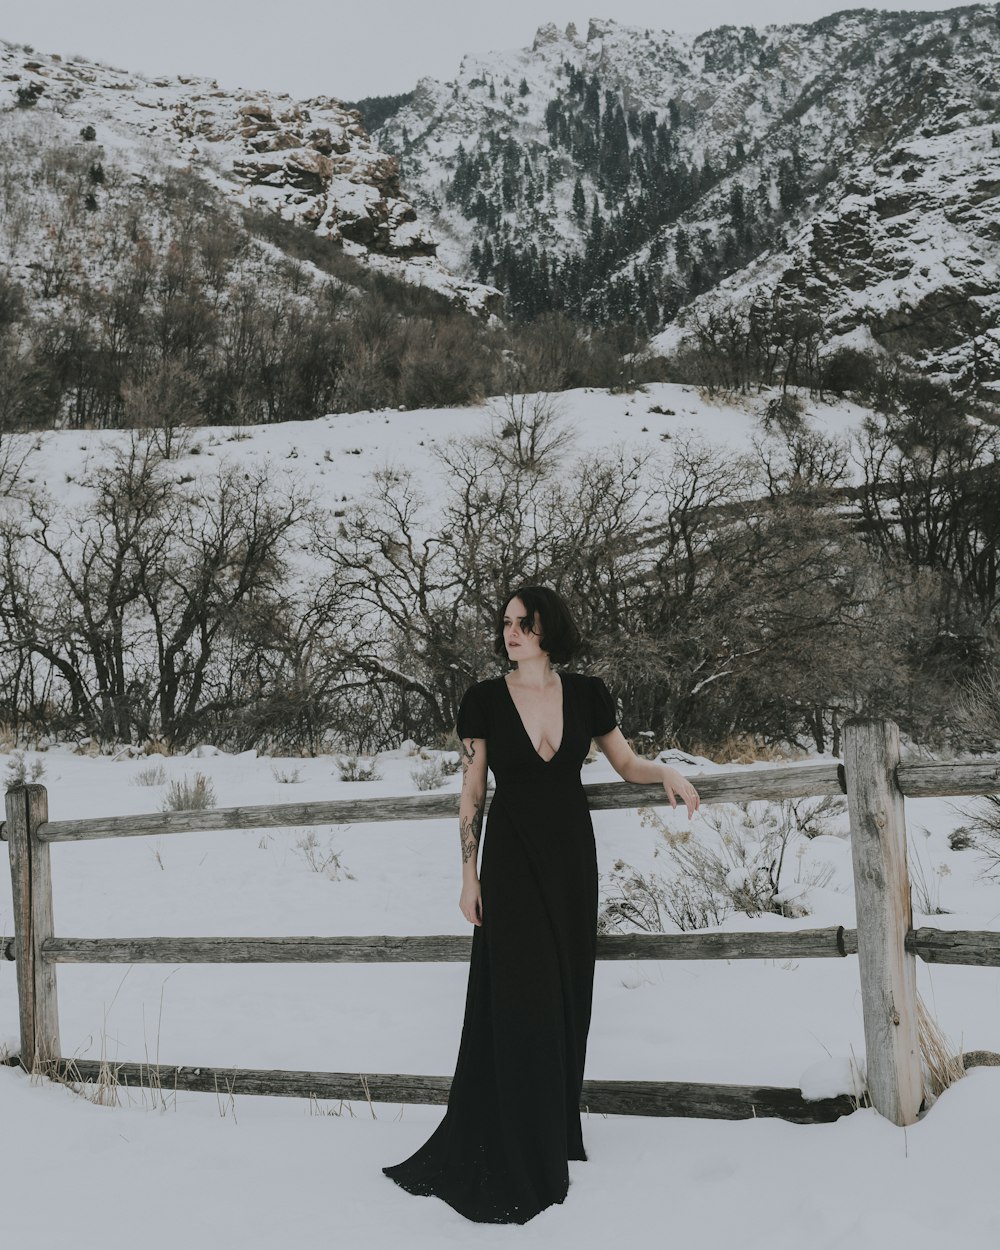 Eine Frau im schwarzen Kleid steht im Schnee